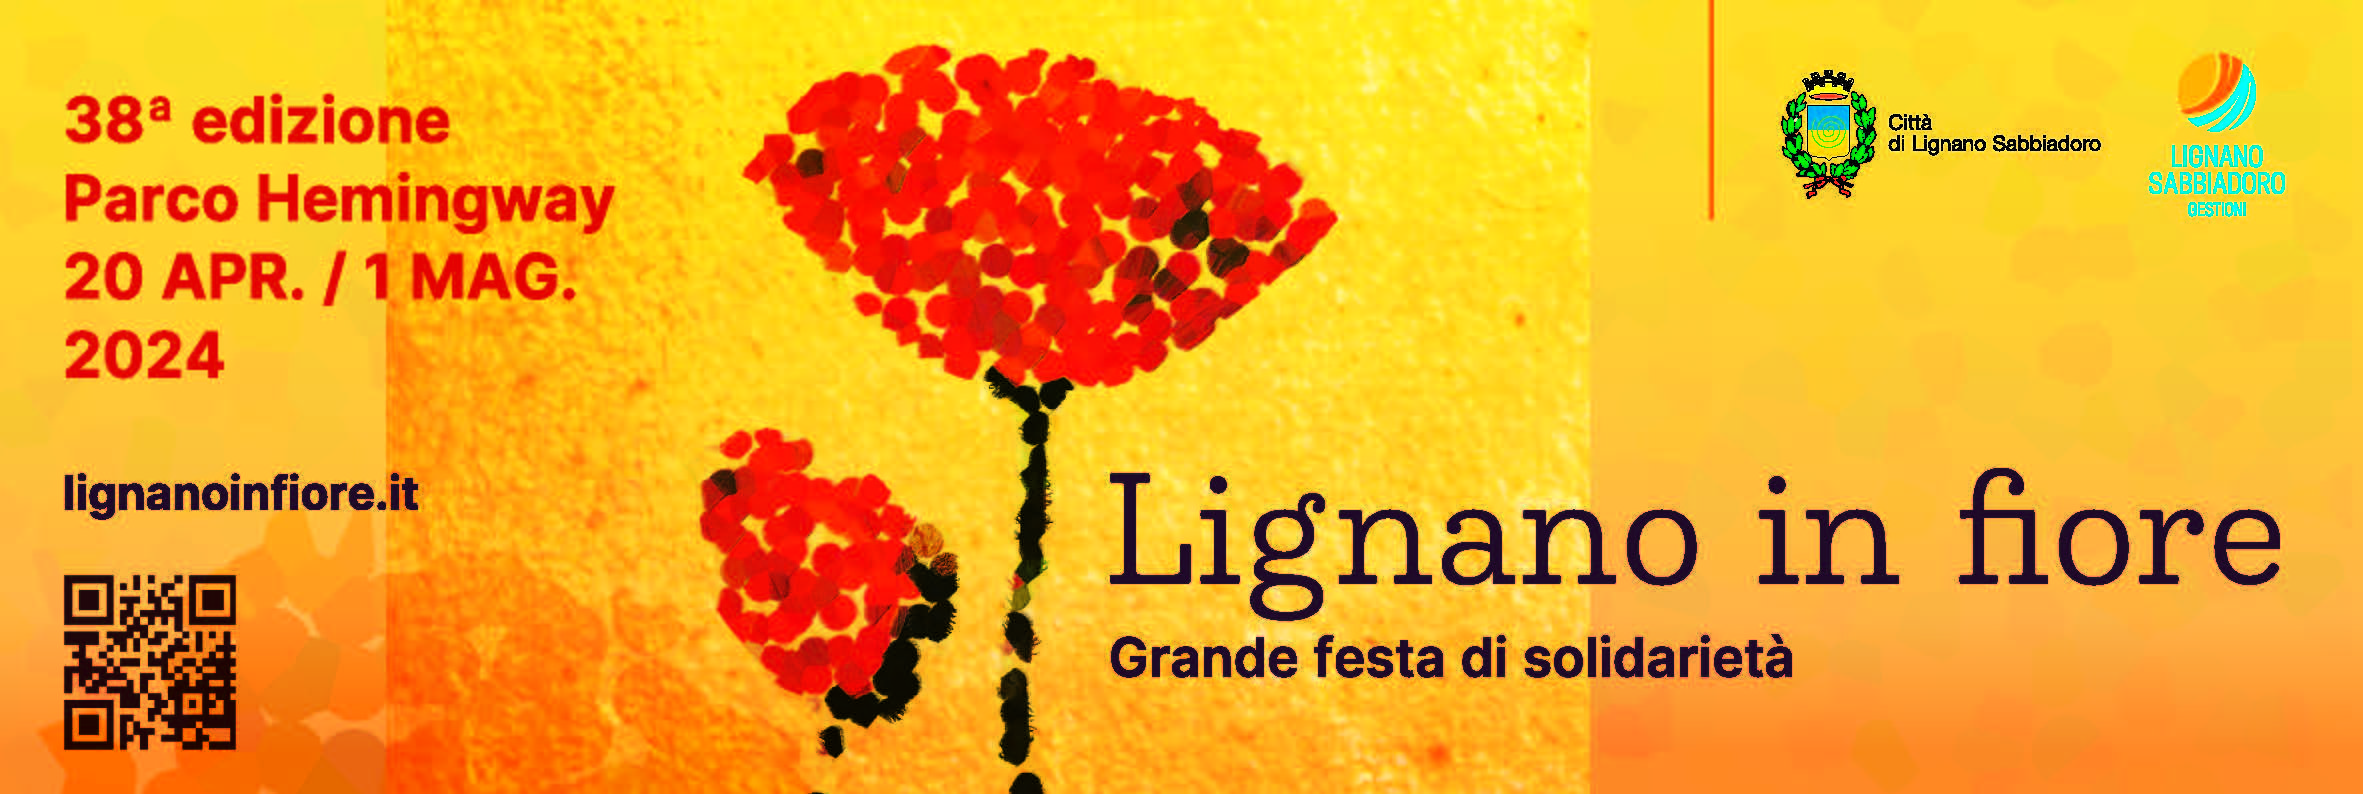 Lignano_in_Fiore_2024_-_Annuncio_15x5.original